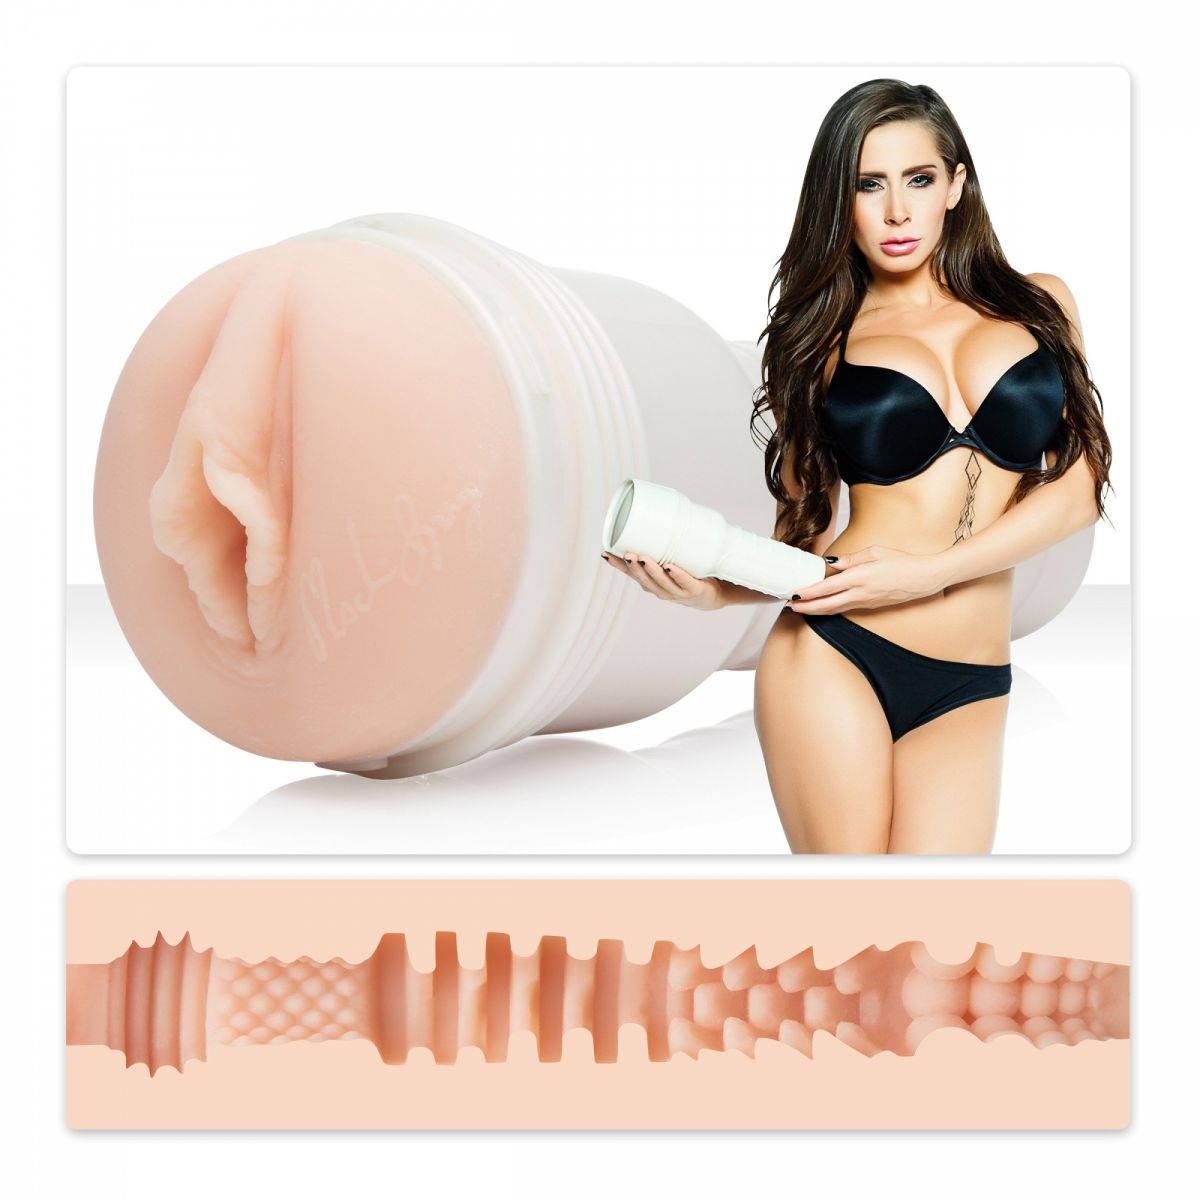 Мастубратор Fleshlight — это одна из самых качественных секс-игрушек для мужчин. Это удобная туба, внутри которой расположен ультра реалистичный материал — SuperSkin. Он нежно обхватывает член и дарит невероятное блаженство. Продуманная конструкция позволяет регулировать количество воздуха внутри, и искусственно созданный вакуум дарит ощущения орального секса.<br><br>  Представляем мастурбатор от Fleshlight, повторяющий каждую складочку и изгиб манящей попки звезды фильмов для взрослых Мэдисон Айви. Если вы видели Мэдисон Айви в одной из ее многочисленных главных ролей или эпизодических сцен, вам может быть трудно выбросить ее из головы. Теперь именно вы можете ощутить, каково это - оказаться в постели с одной из мировых знаменитостей.<br><br>  Вход в маструбатор полностью копирует нежное тело аппетитной девушки. Внутри же создана особая поверхность, которая массирует пенис. Расширения, сужения, выступы и складочки воздействуют нежно и интенсивно.